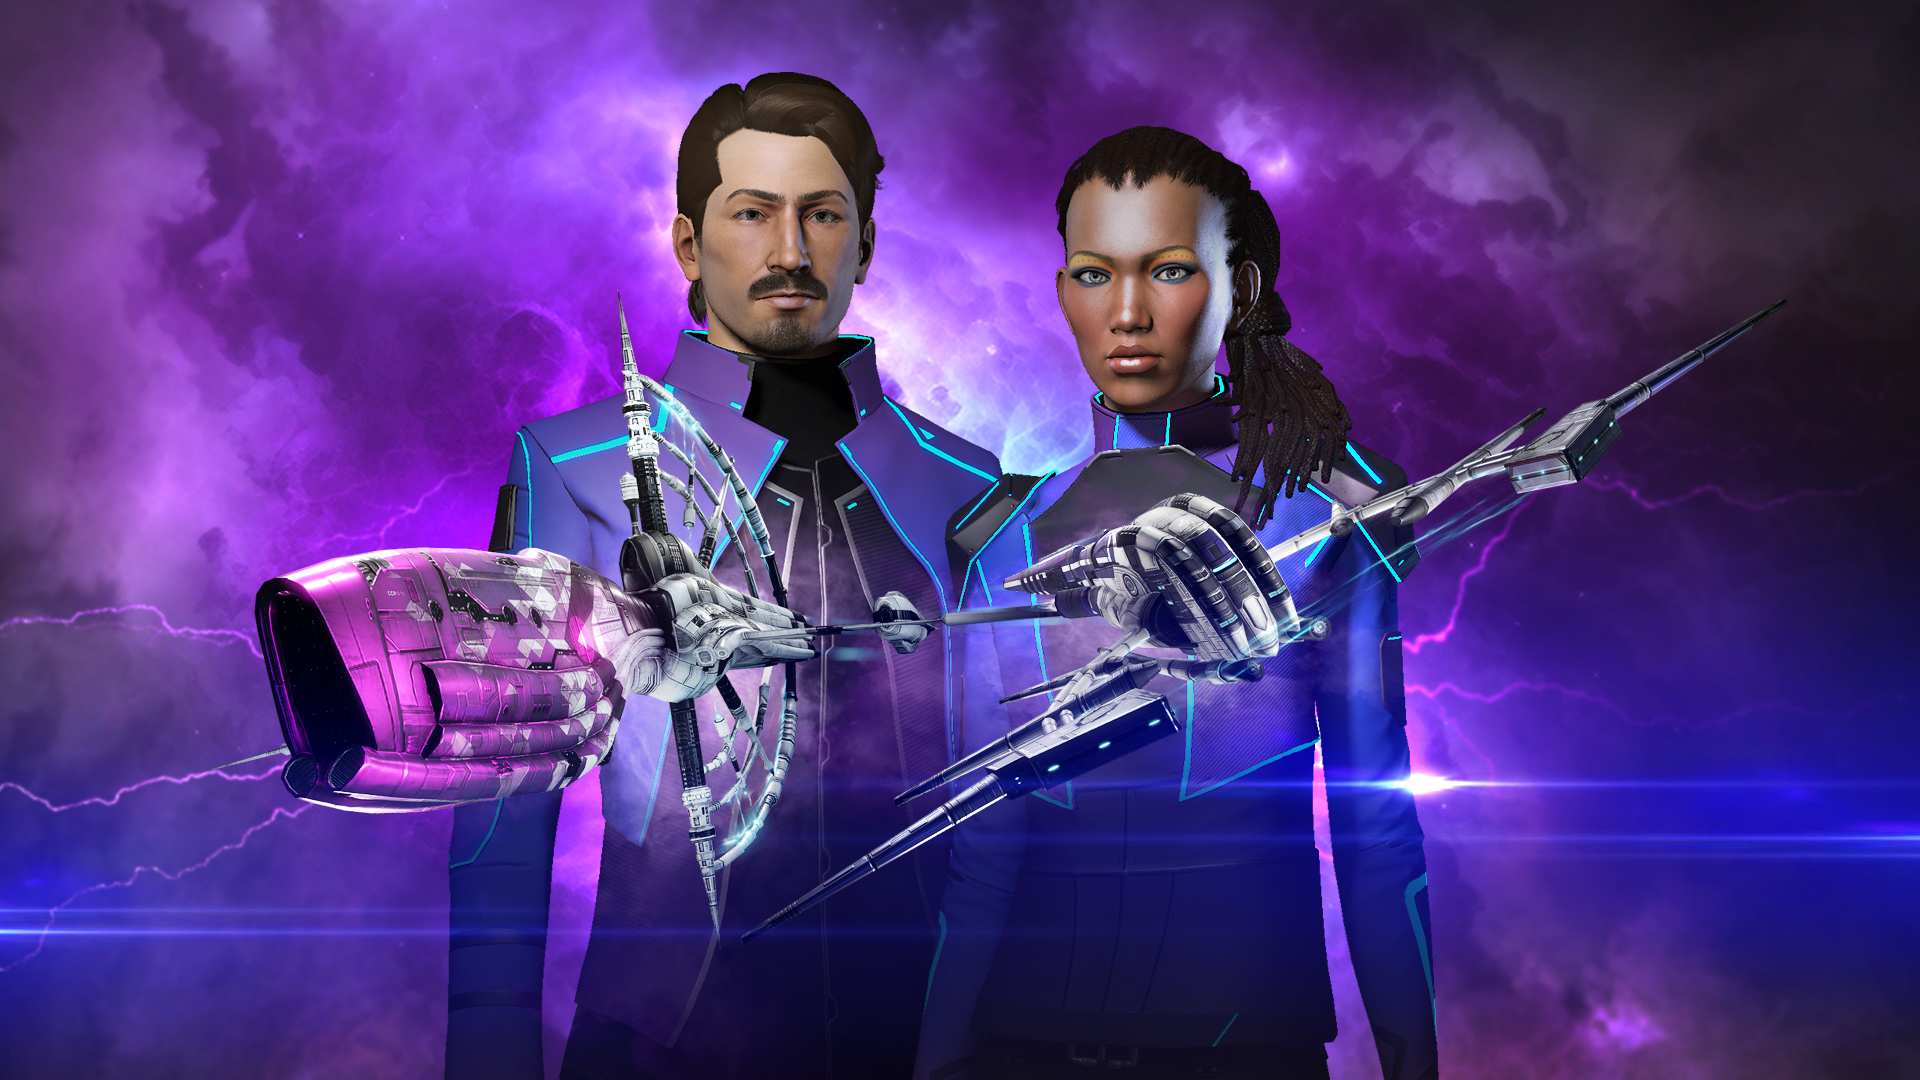 Разработчики заявили о запуске Twitch Drops в EVE Online, что означает бесплатные награды за просмотр трансляций по игре.